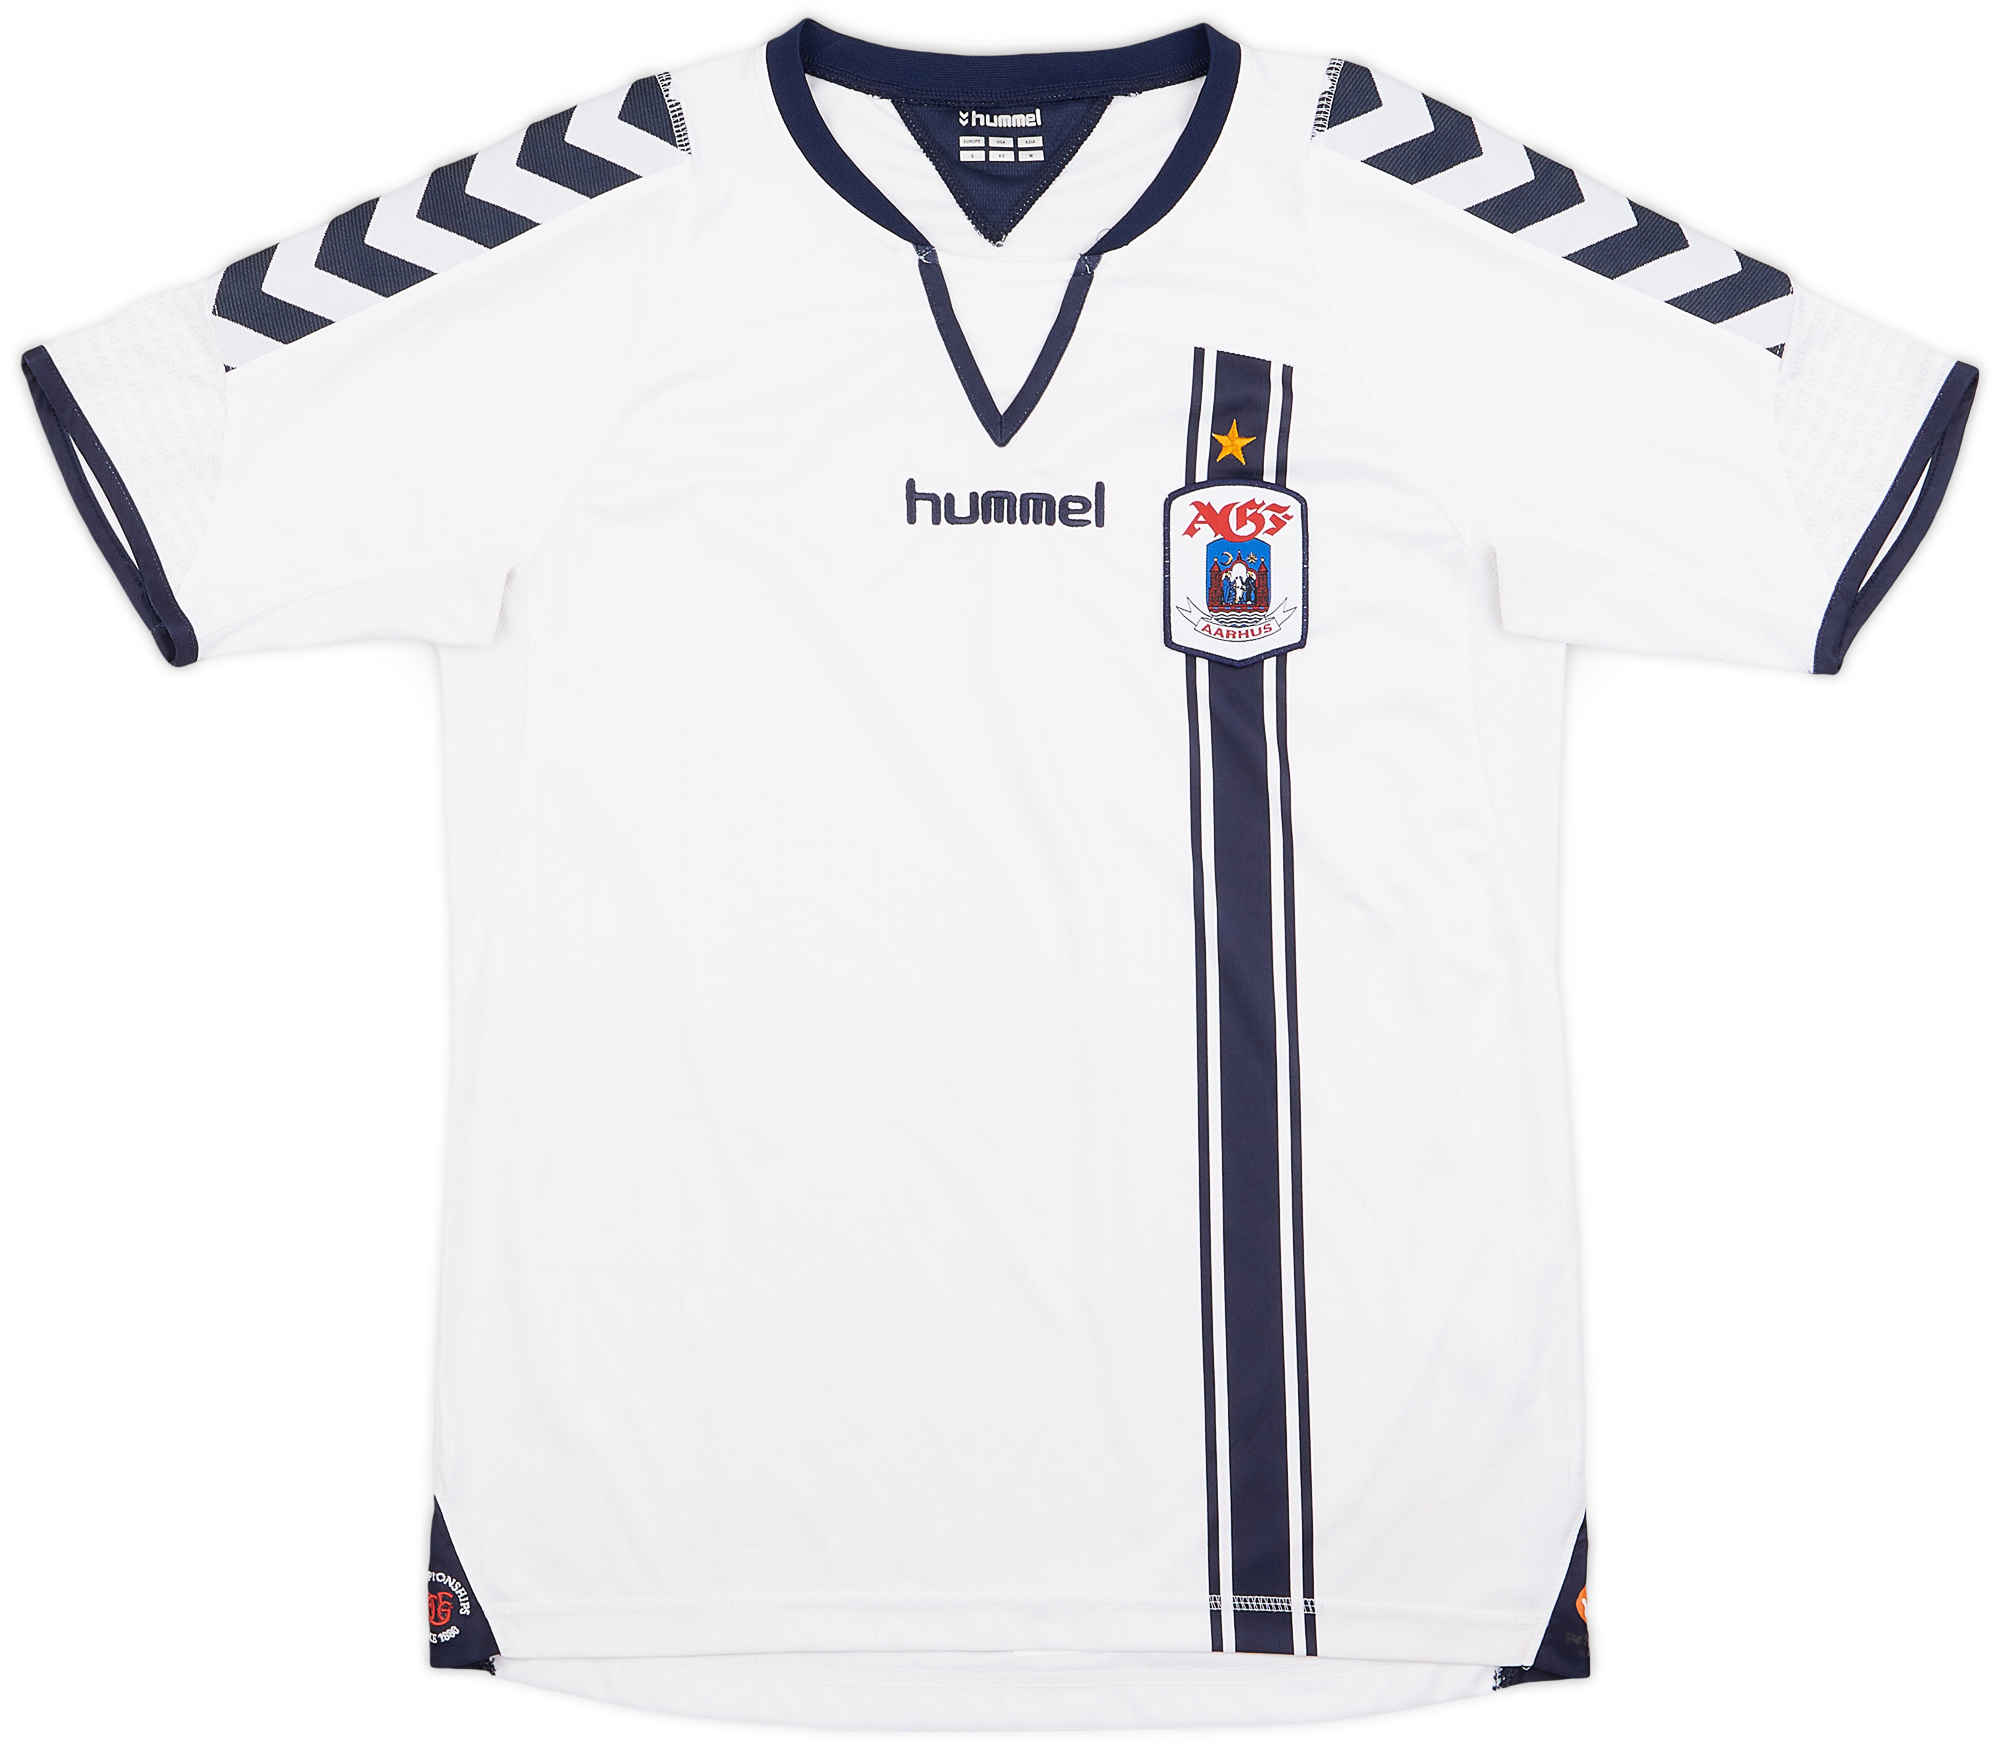 AGF Aarhus  home camisa (Original)